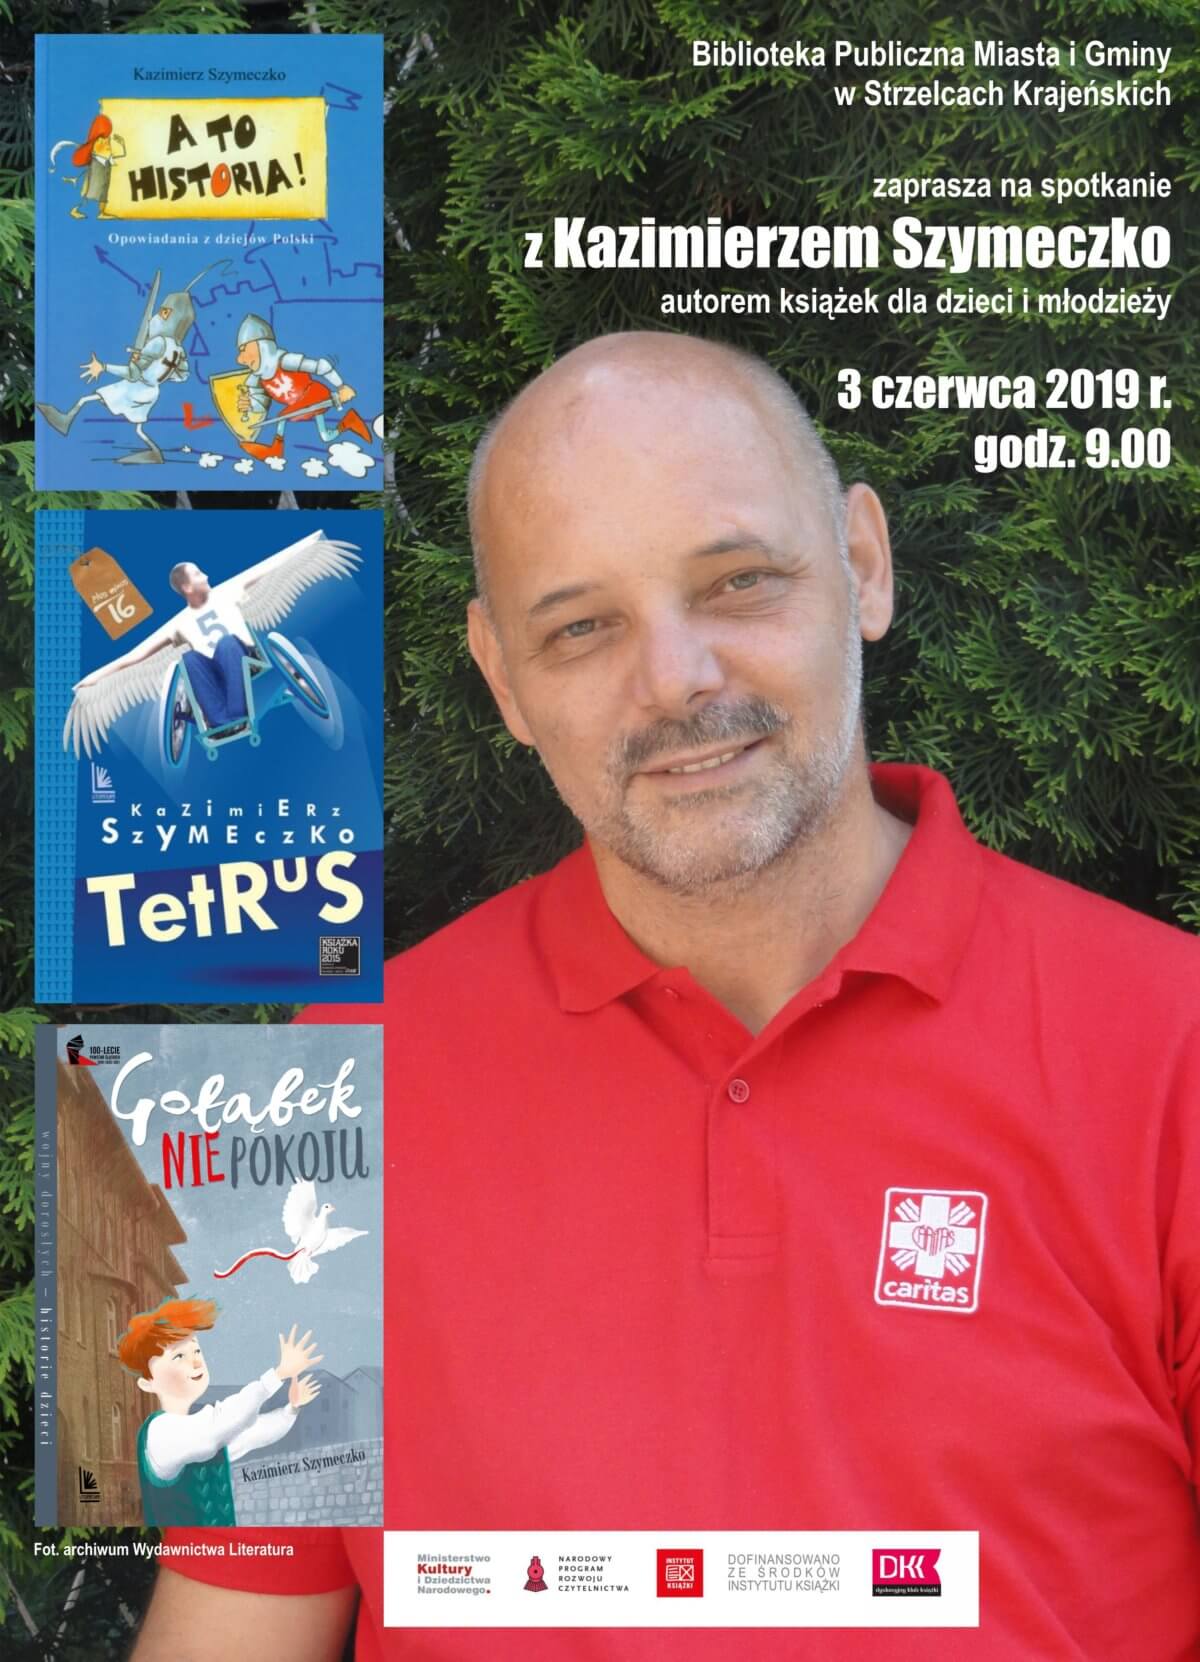 W ramach Dyskusyjnego Klubu Książki 3 czerwca 2019 r. strzelecka biblioteka gościła pisarza Kazimierza Szymeczko.